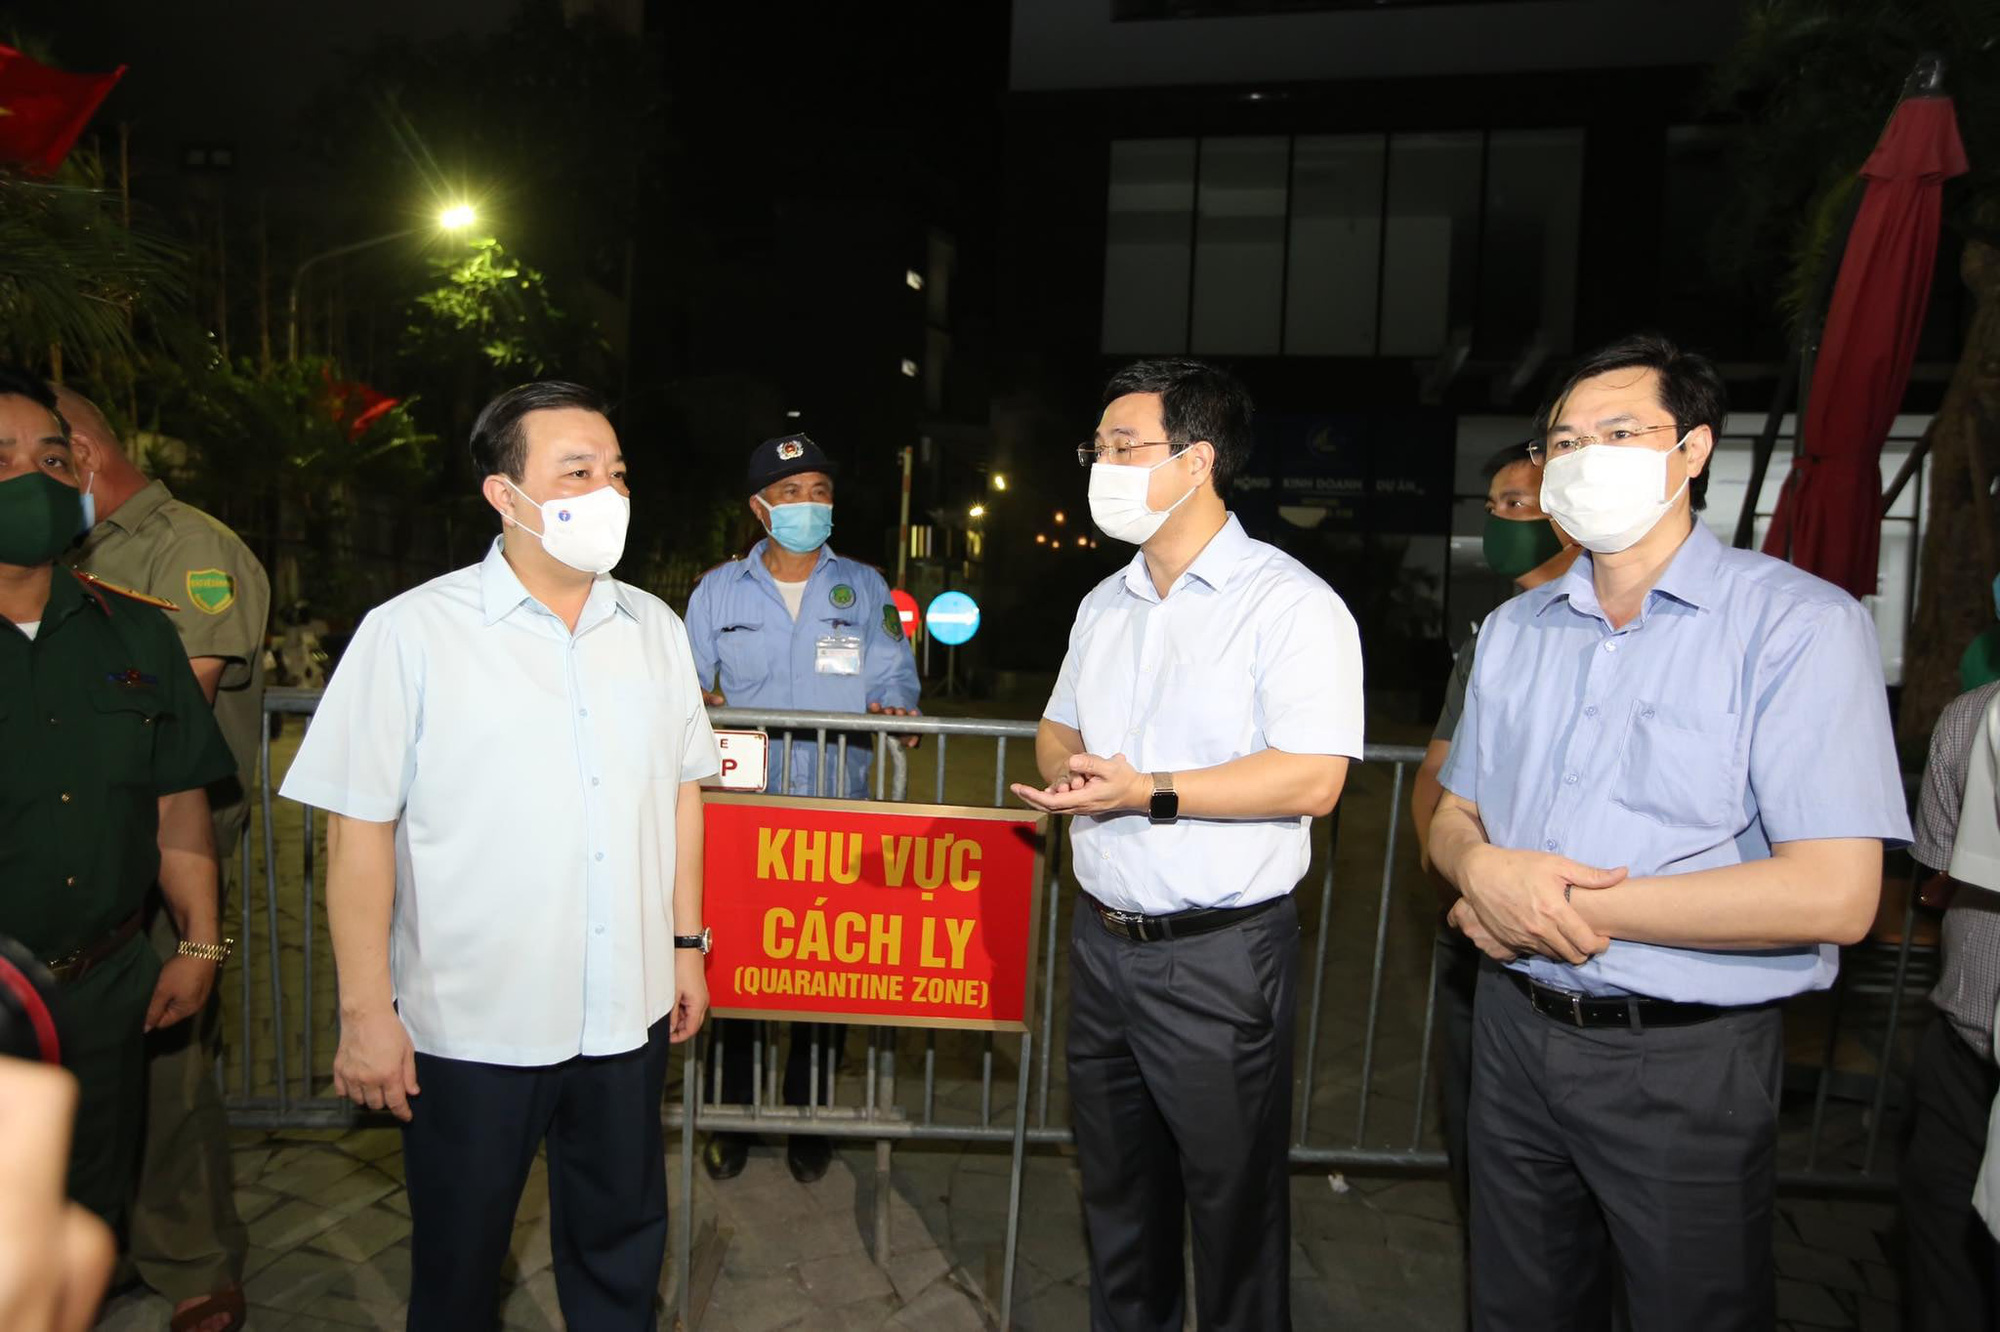 Phó chủ tịch Hà Nội chỉ đạo &quot;nóng&quot; sau vụ phát hiện hơn 40 người nhập cảnh trái phép ngay trong đêm - Ảnh 1.